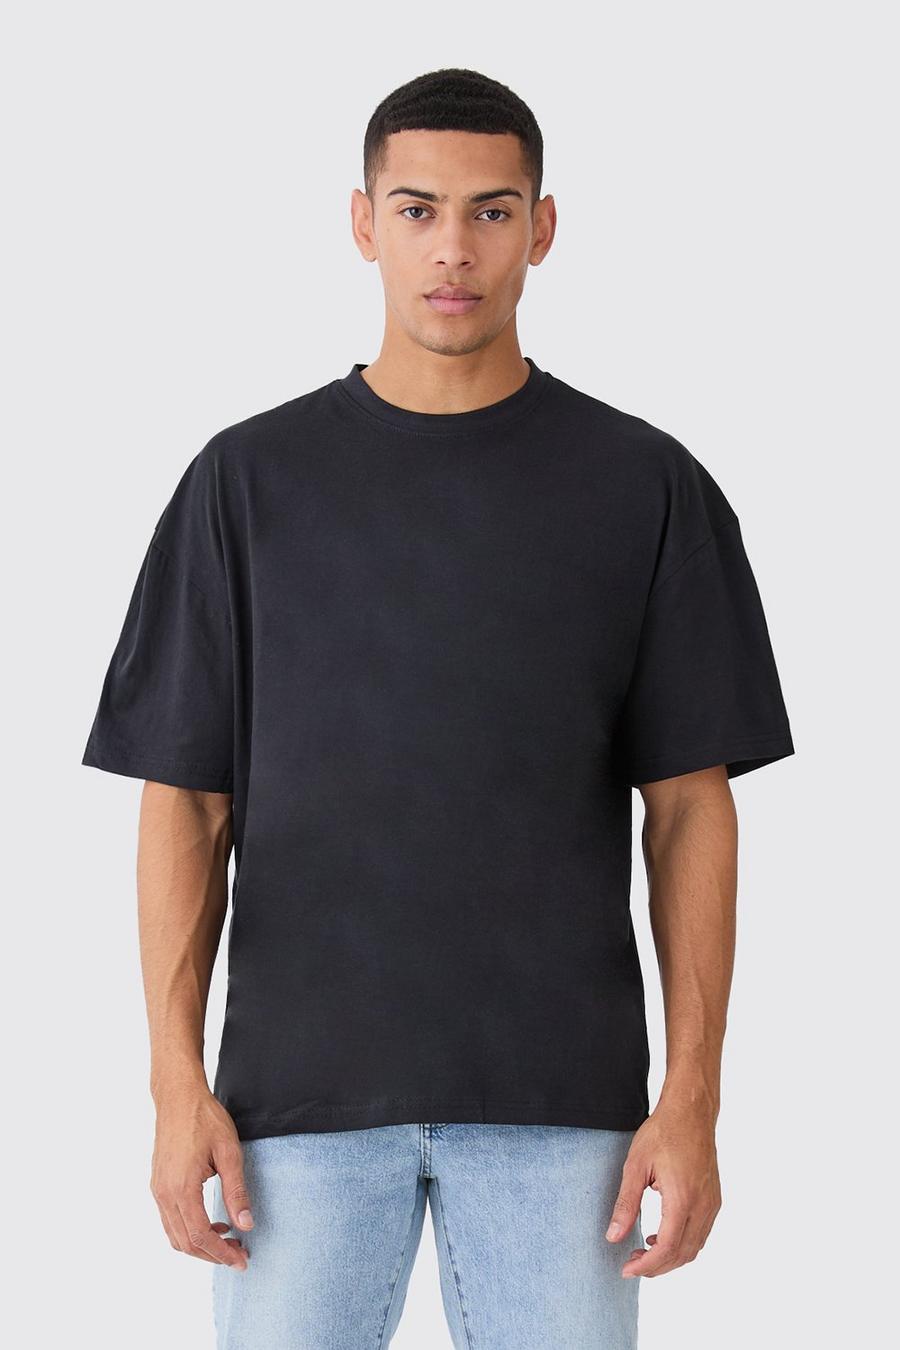 Black Basic Oversized Crew Neck T-shirt